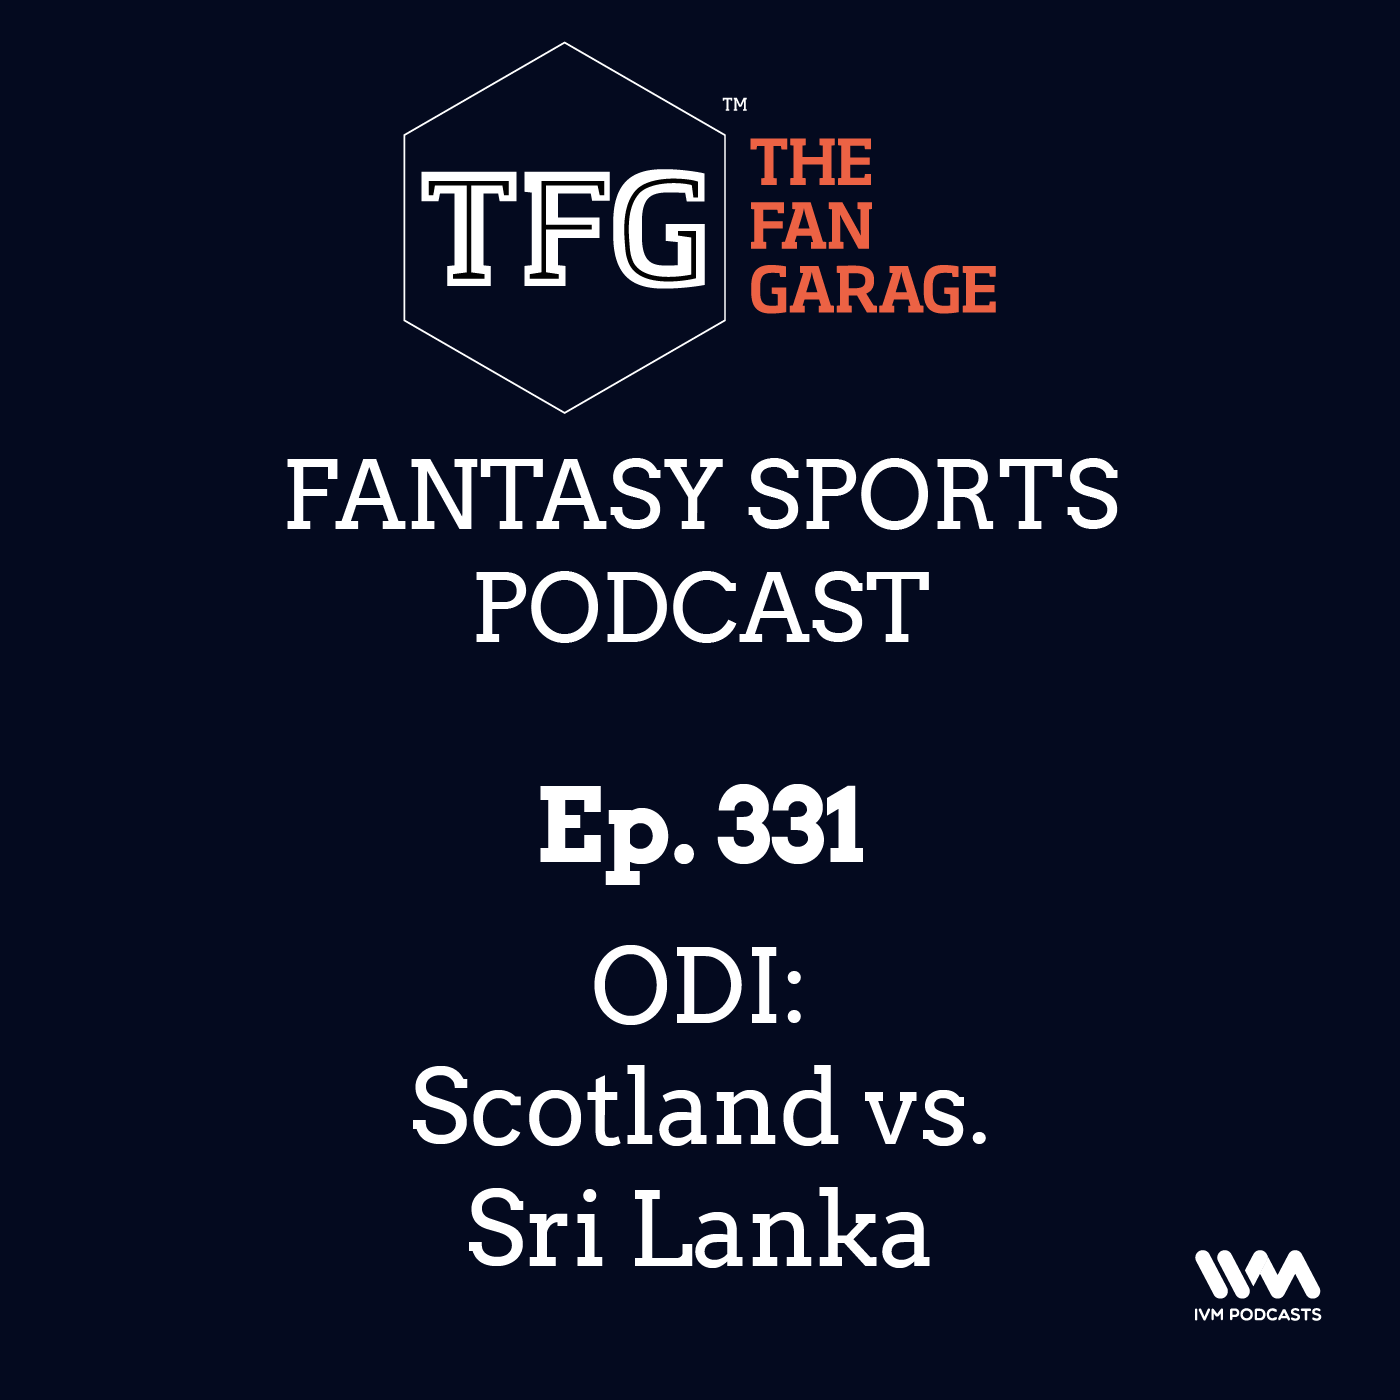 TFG Fantasy Sports Podcast Ep. 331: ODI: Scotland vs. Sri Lanka